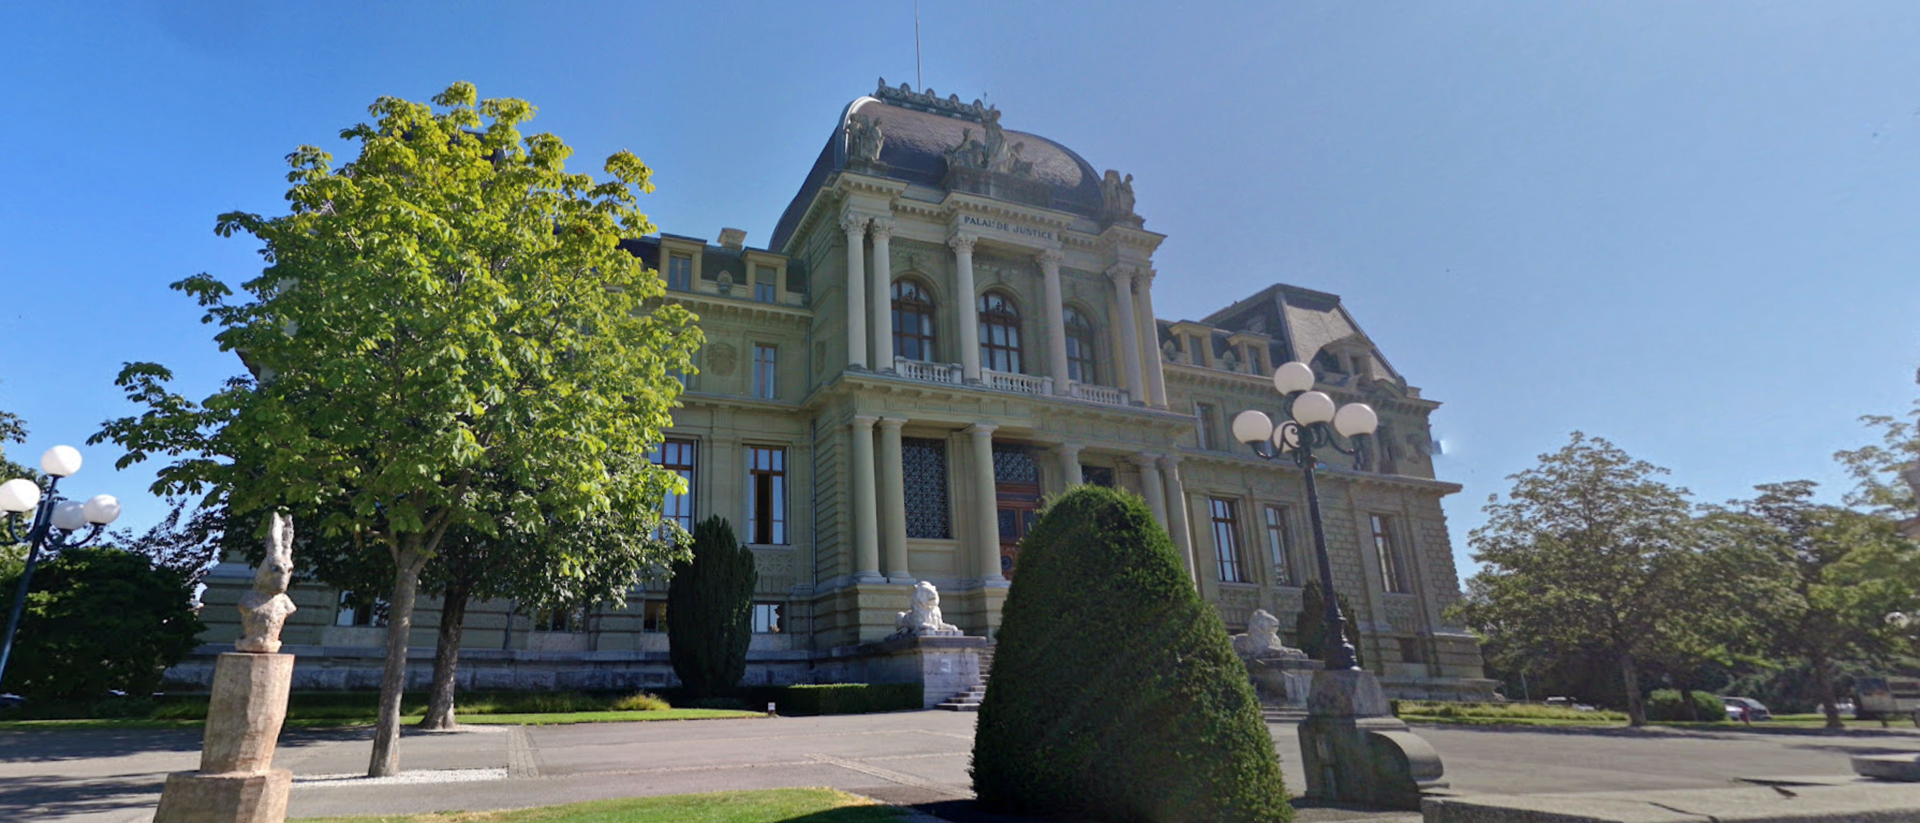 Le tribunal d'arrondissement de Lausanne | © Google Maps